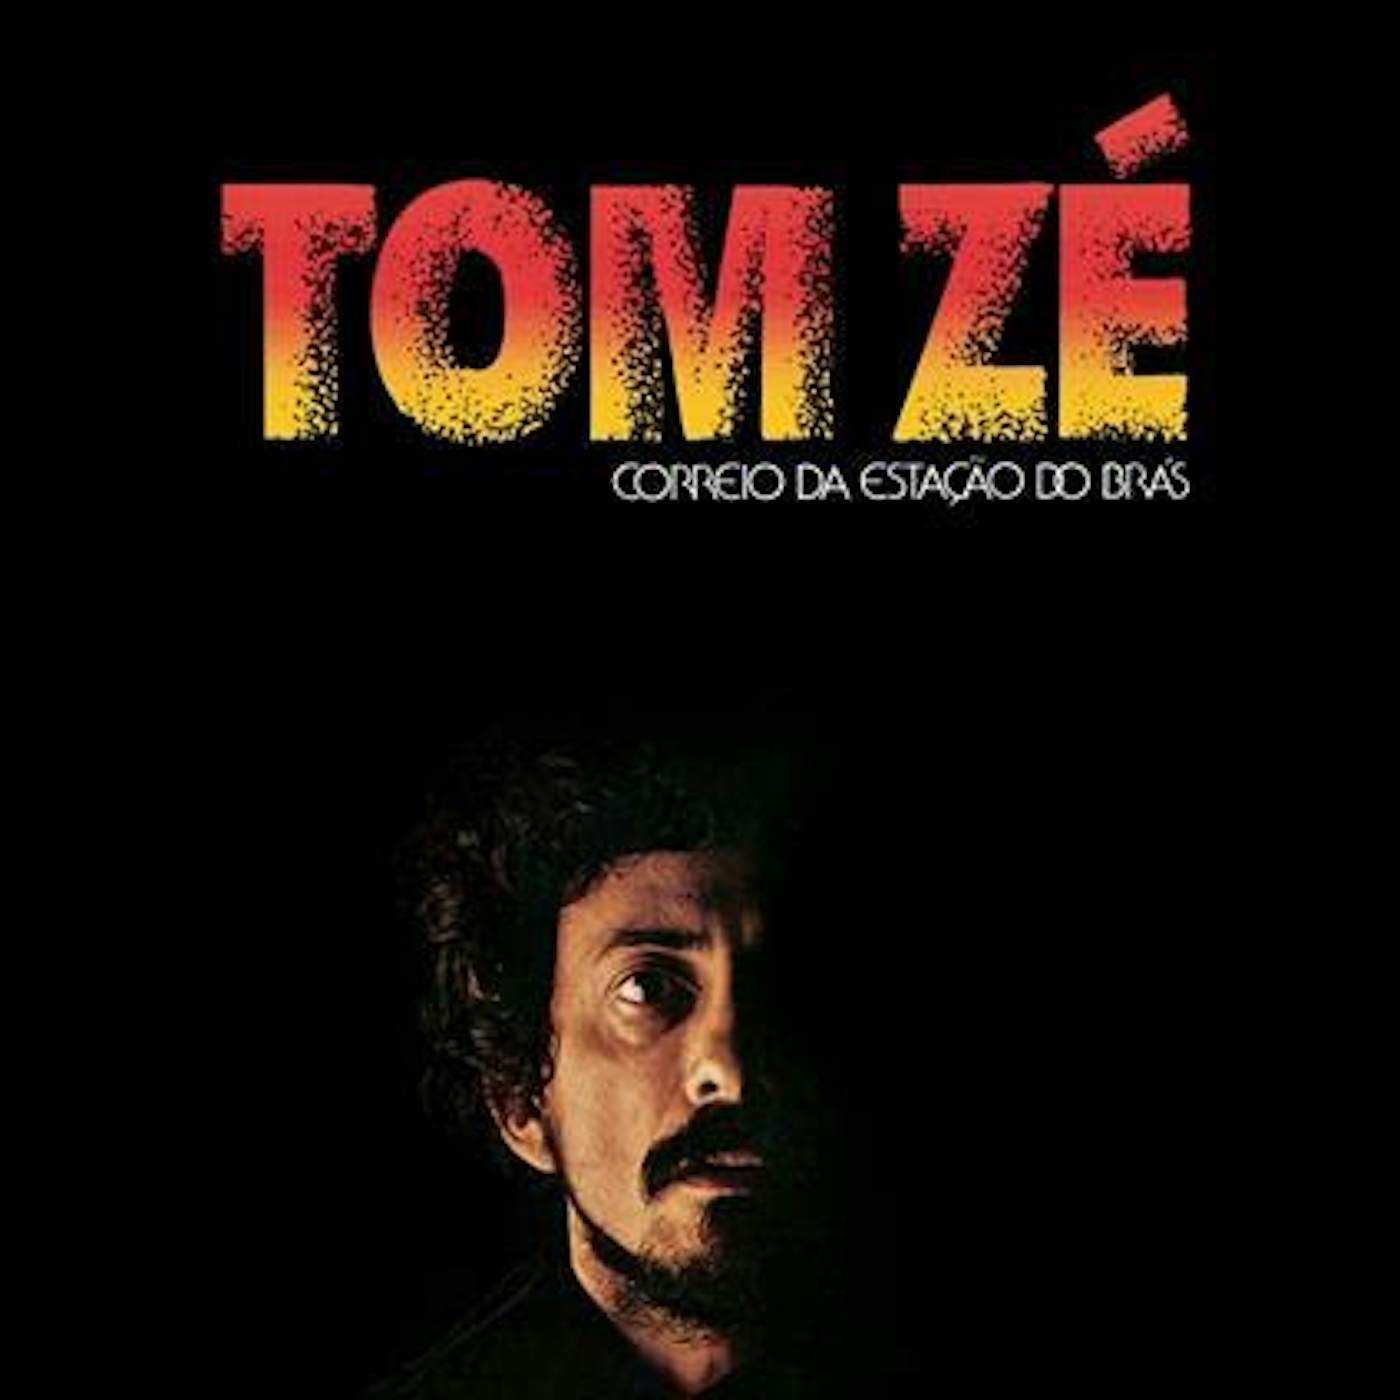 Tom Zé CORREIO DA ESTACAO DO BRAS Vinyl Record